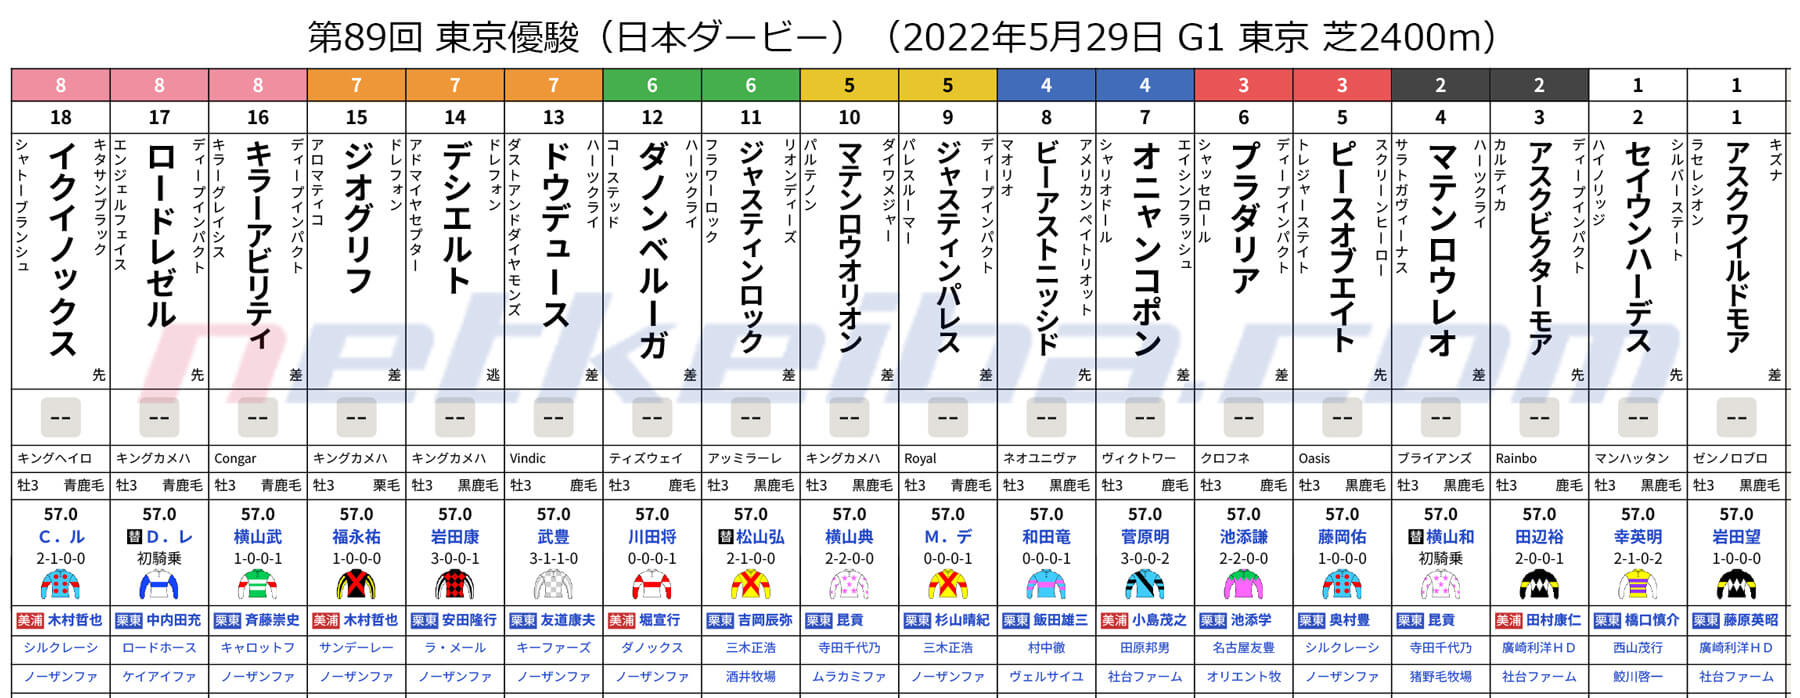 第89回 東京優駿（日本ダービー）（2022年5月29日 G1 東京 芝2400m）枠順